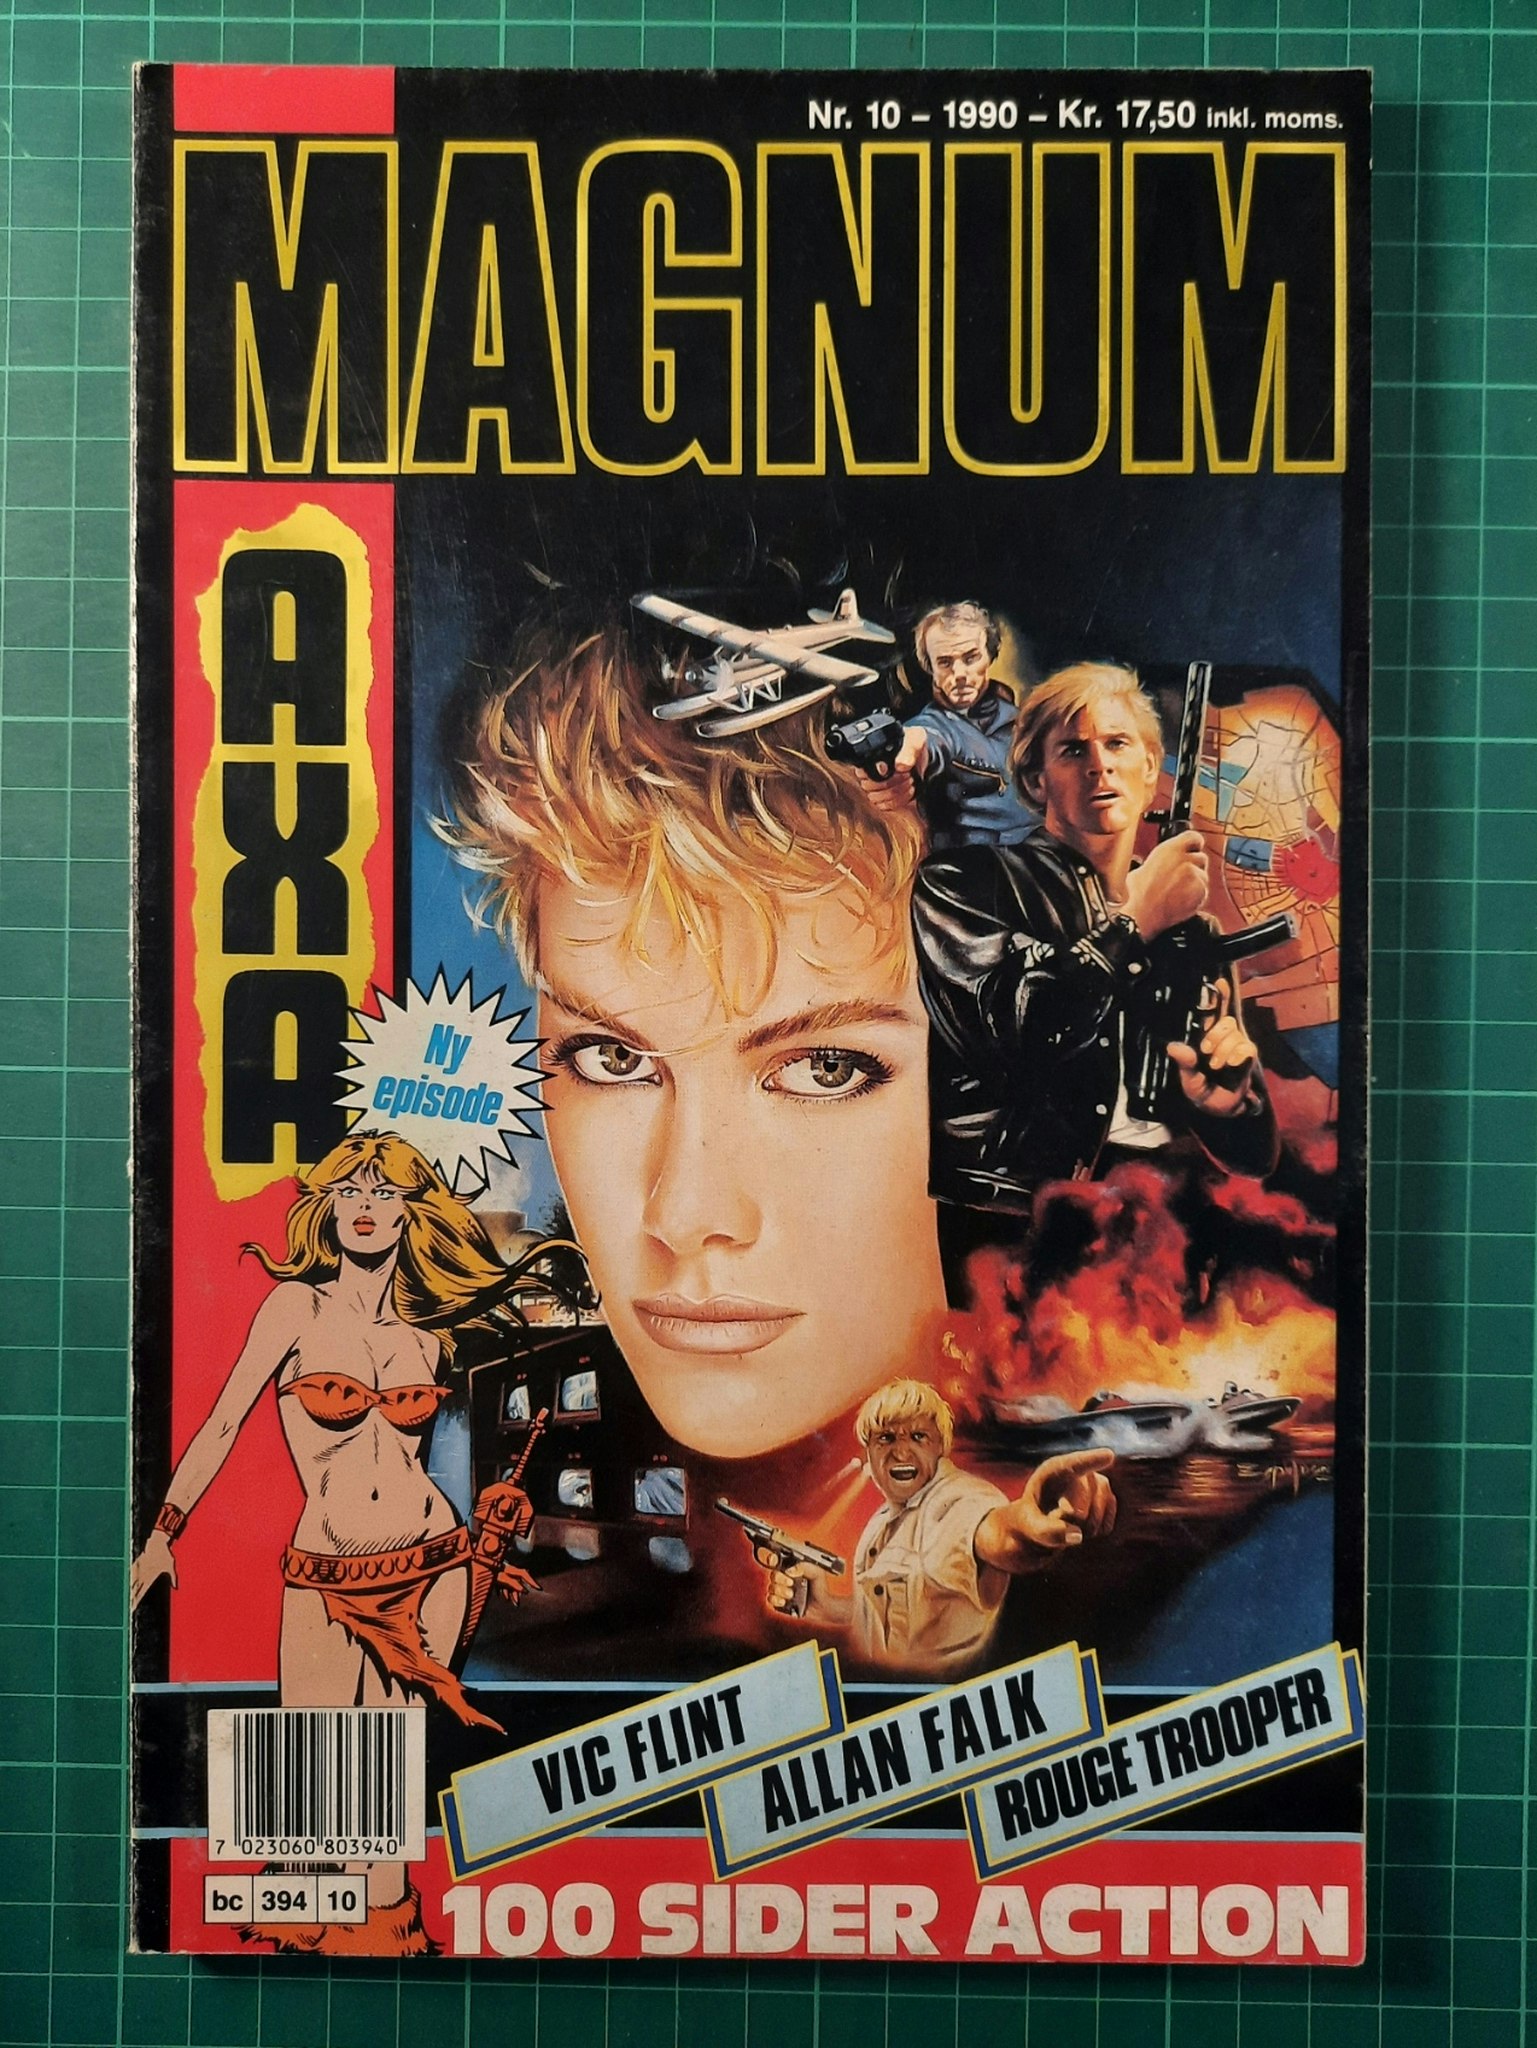 Magnum 1990 - 10